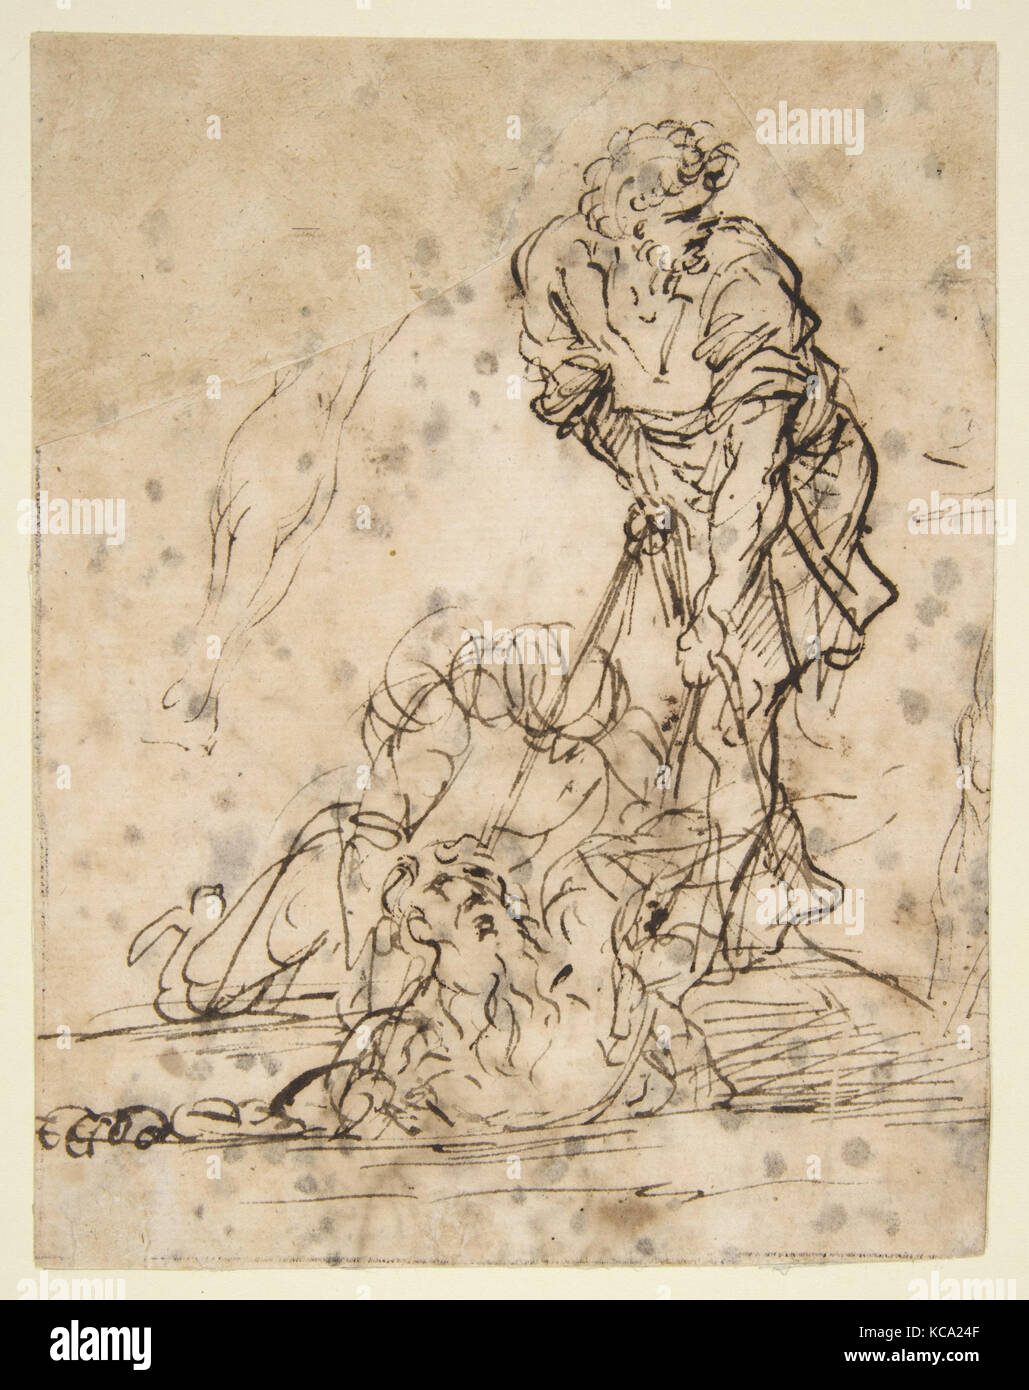 Studien für eine Abbildung von einem Grab gehoben oder Grube durch Schnüre. V e r s o: Weitere Studie der selben Figur, Salvator Rosa, 1615-73 Stockfoto